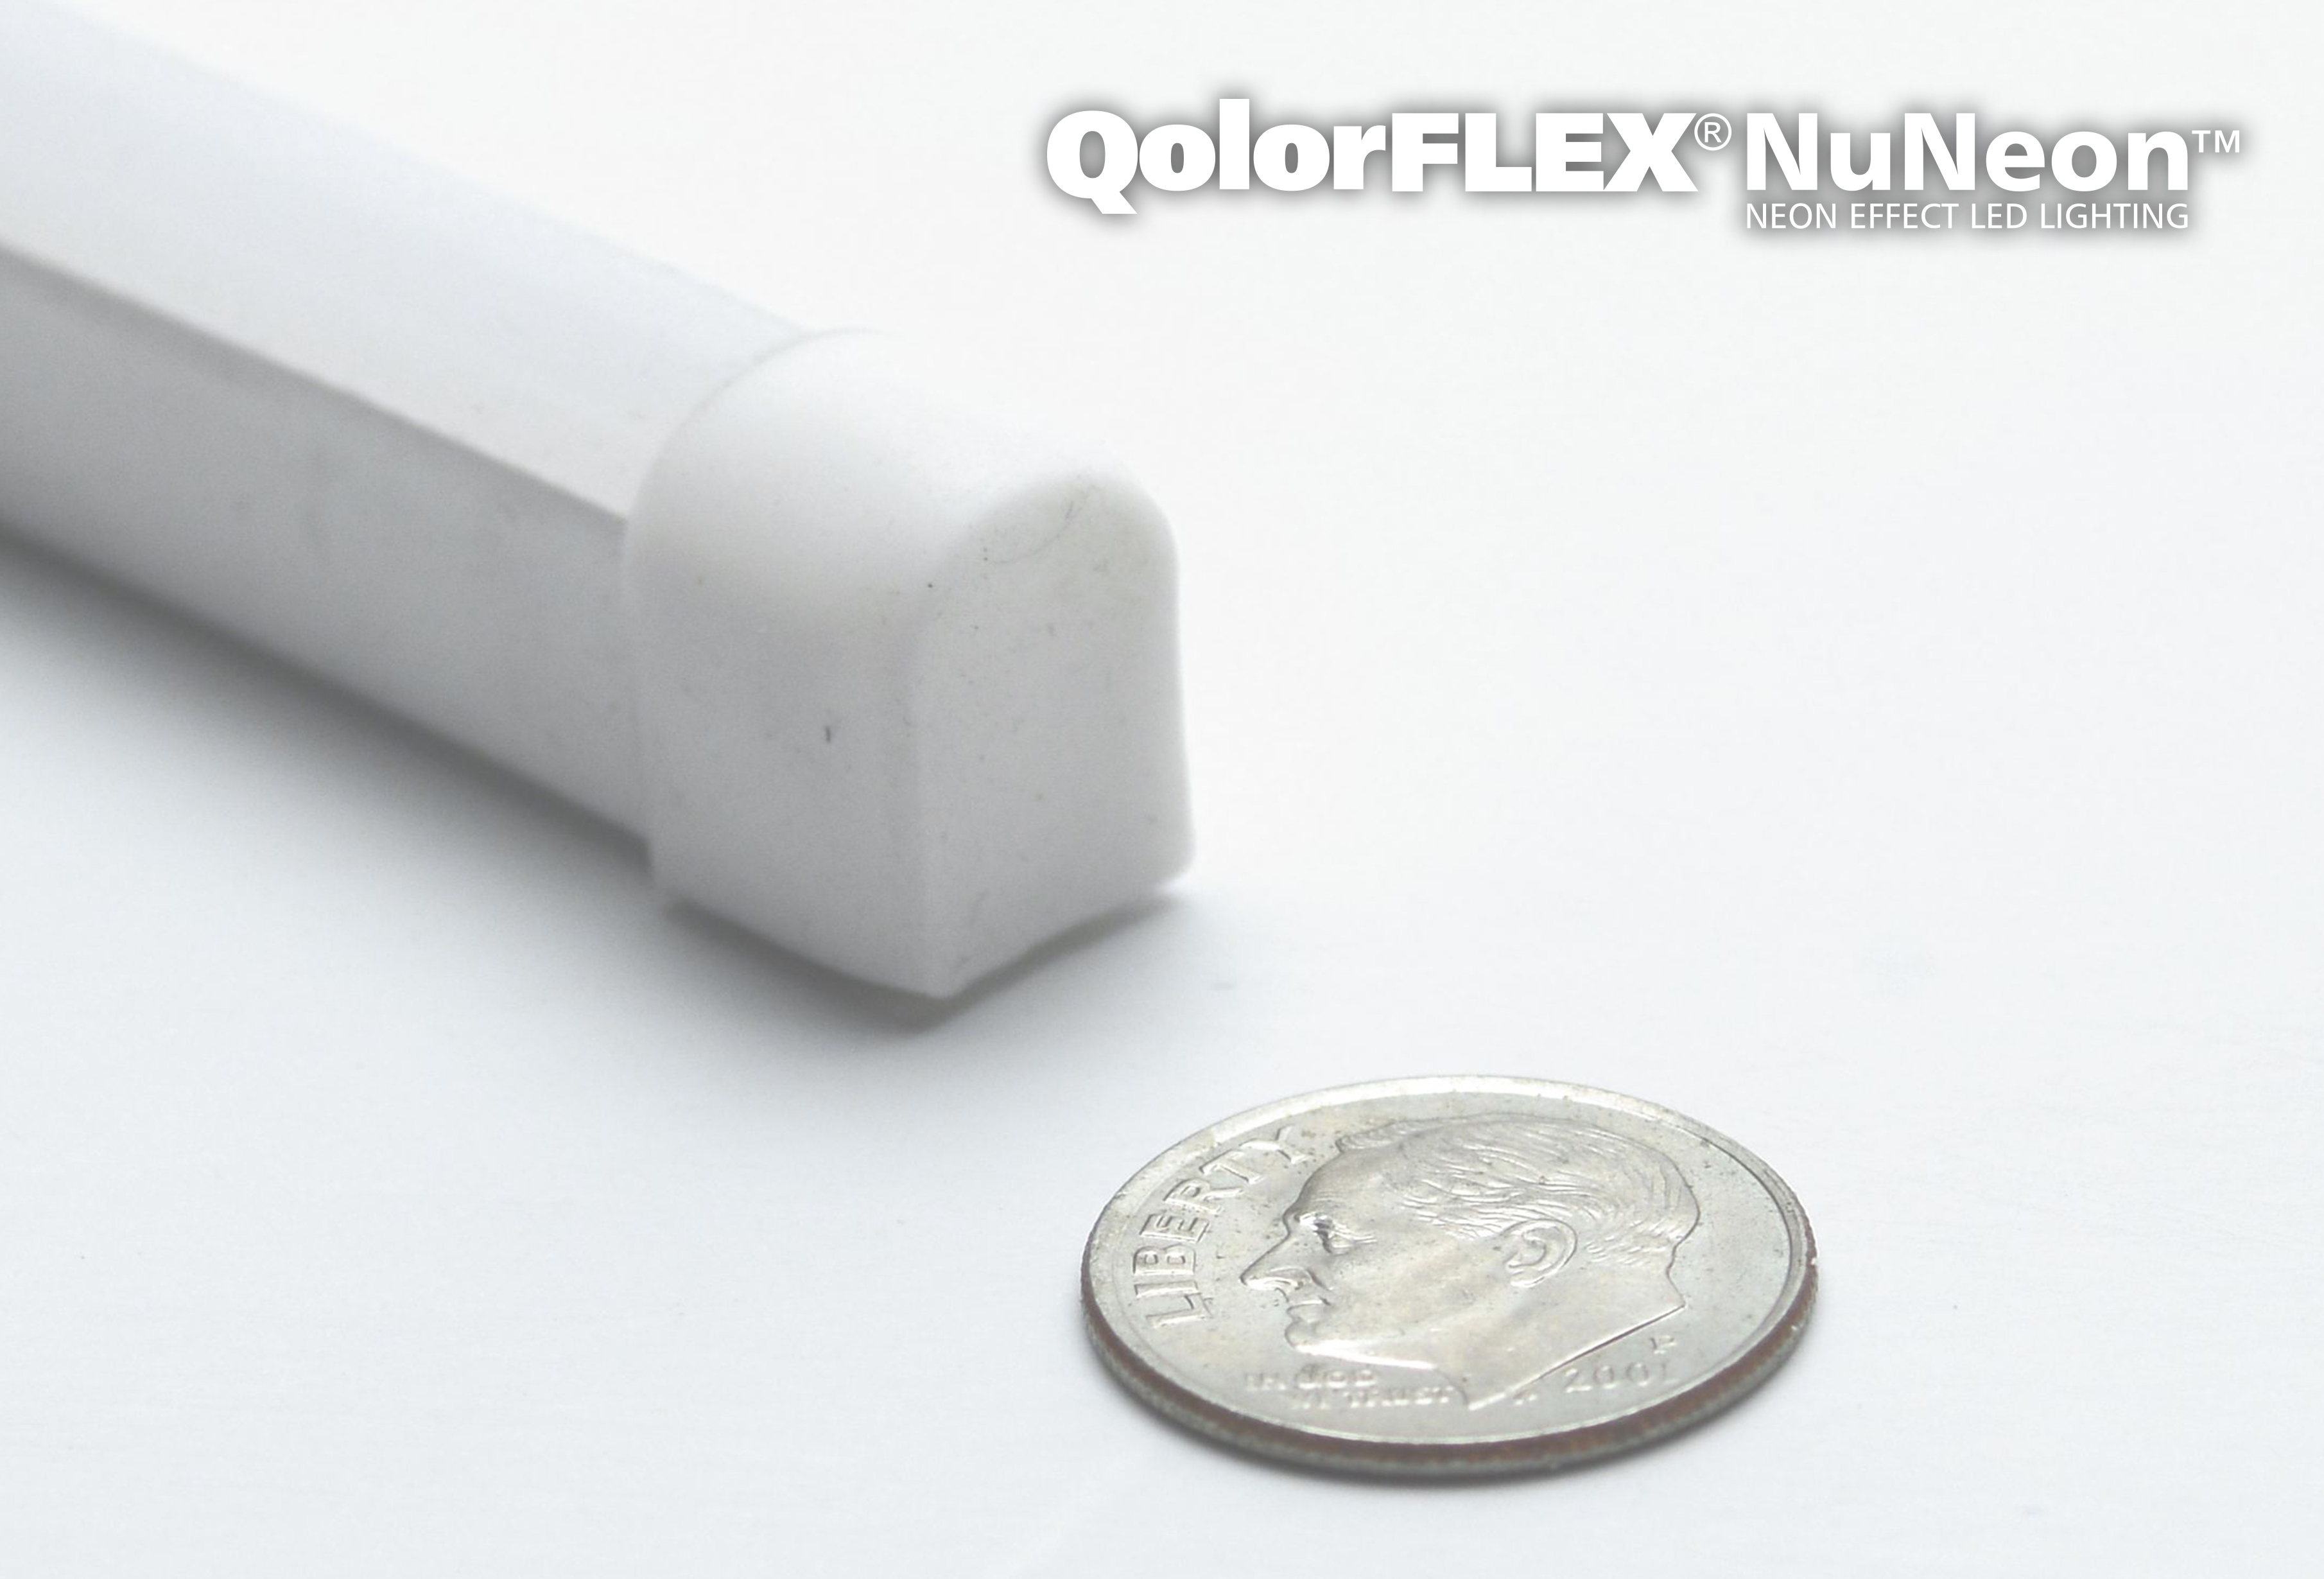 QolorFLEX NuNeon, unlit to show product dimensions